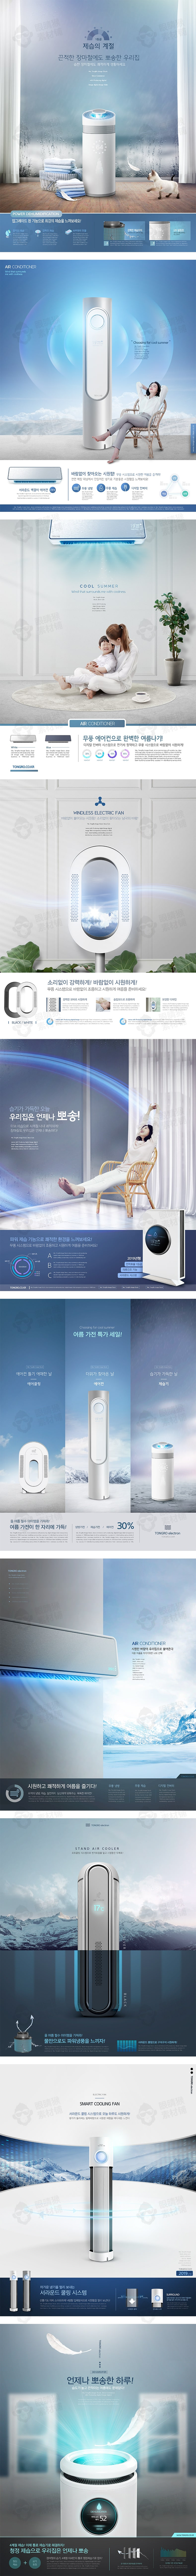 韩风空调空气净化器风扇夏季家用电器洗衣机DM单页psd设计素材模板-平面广告、海报素材-到位啦UI